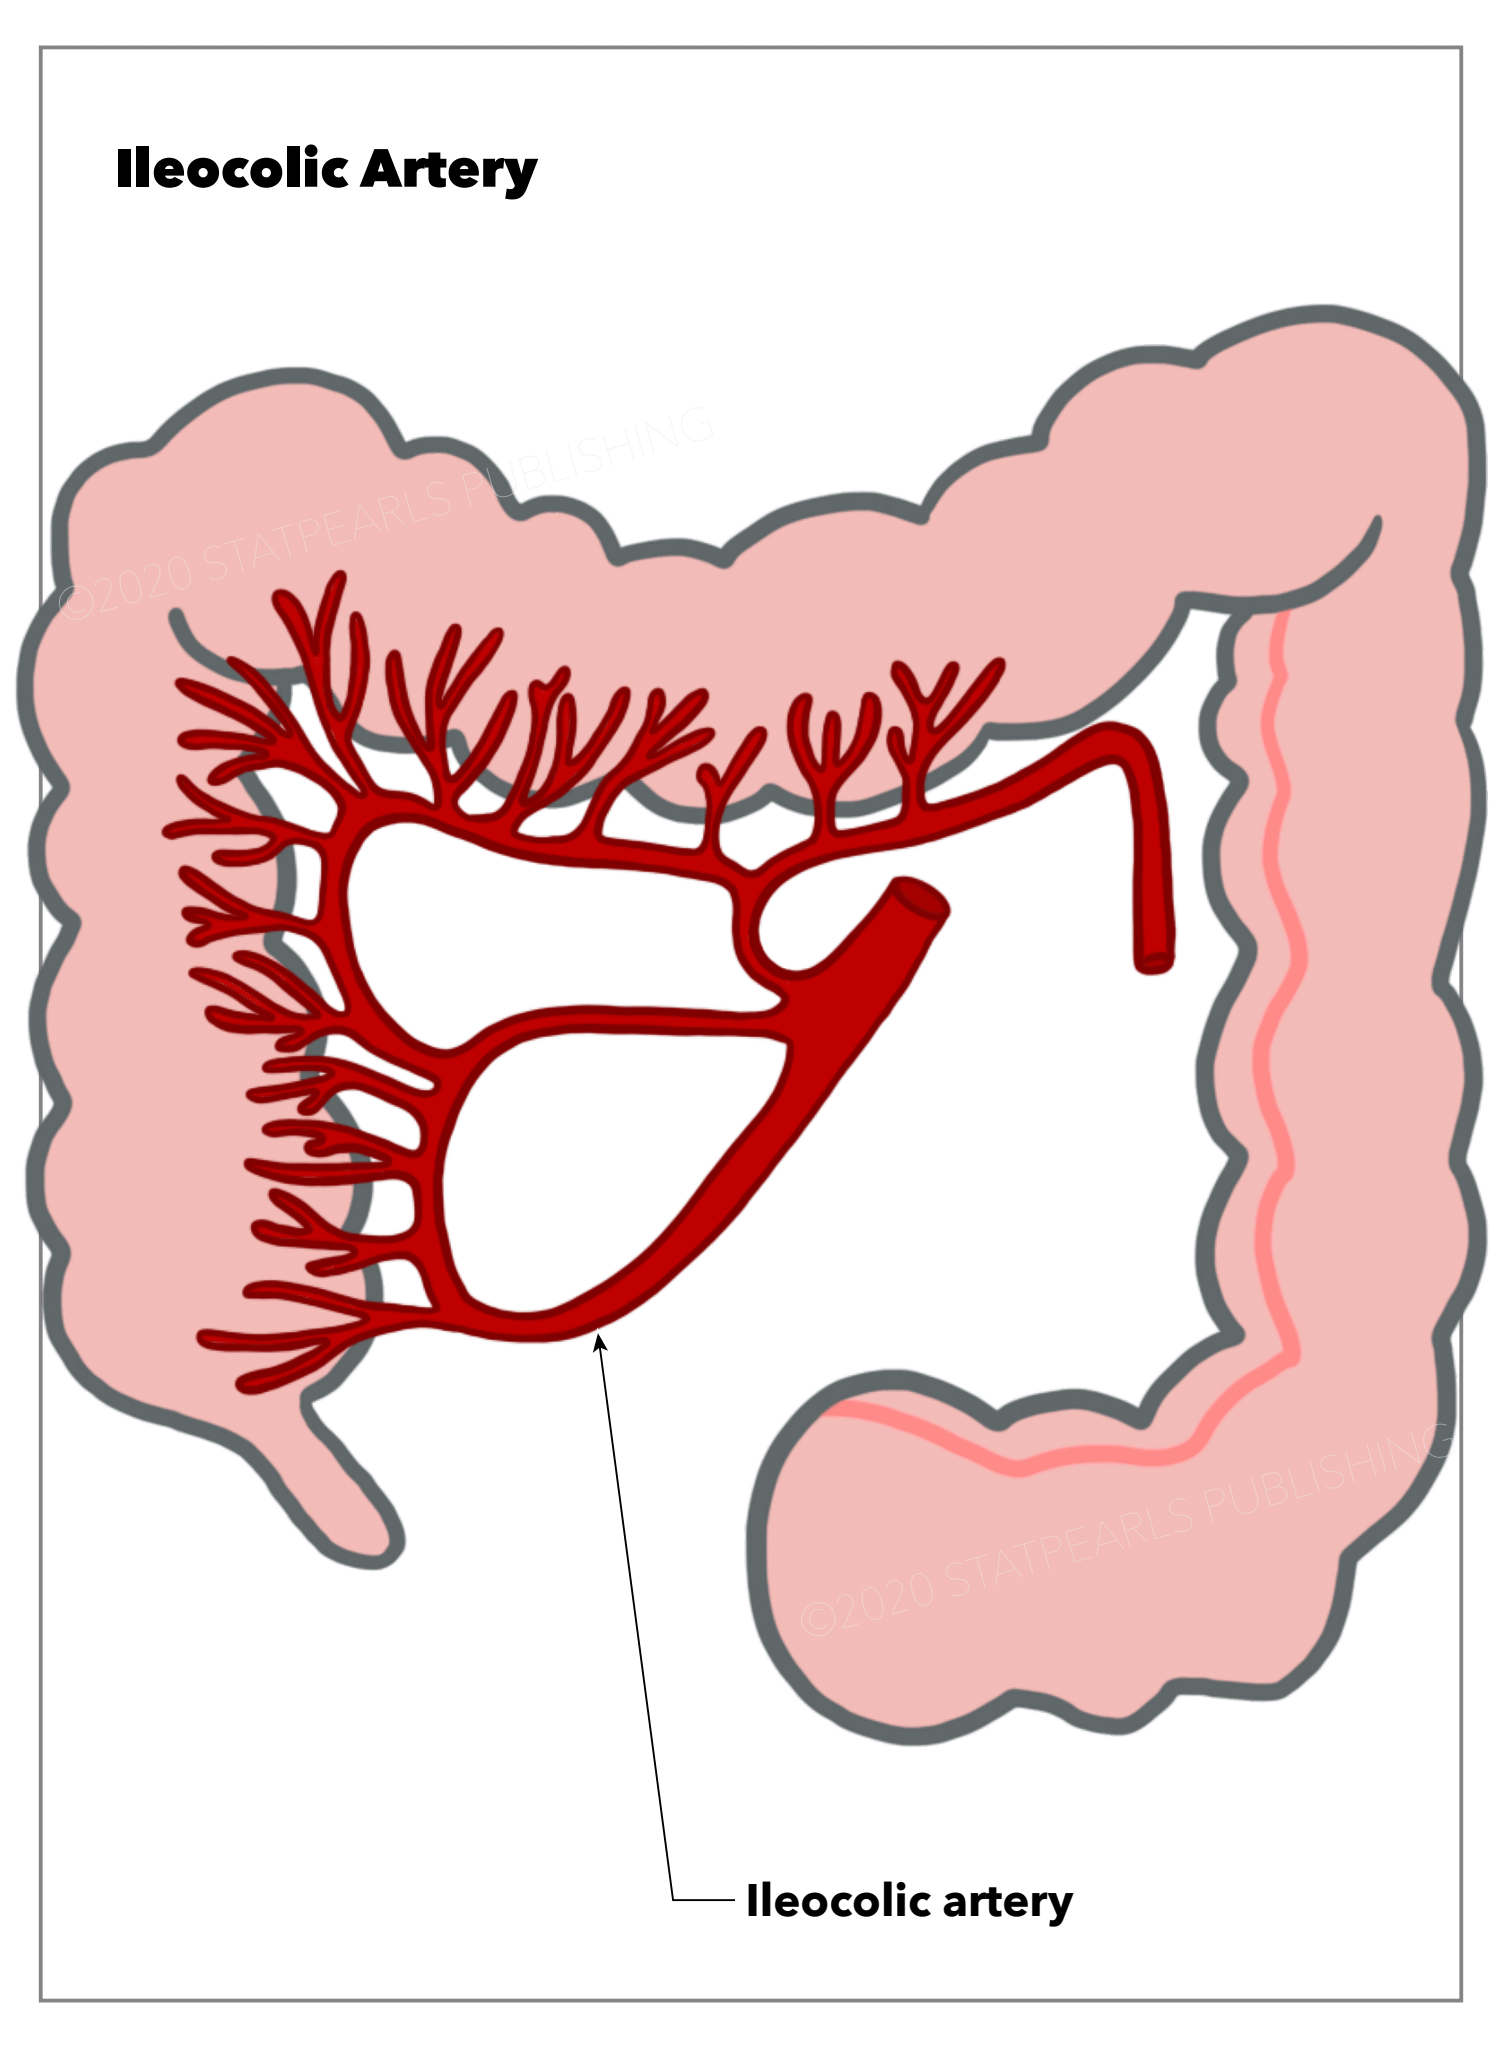 Ileocolic artery, intestine